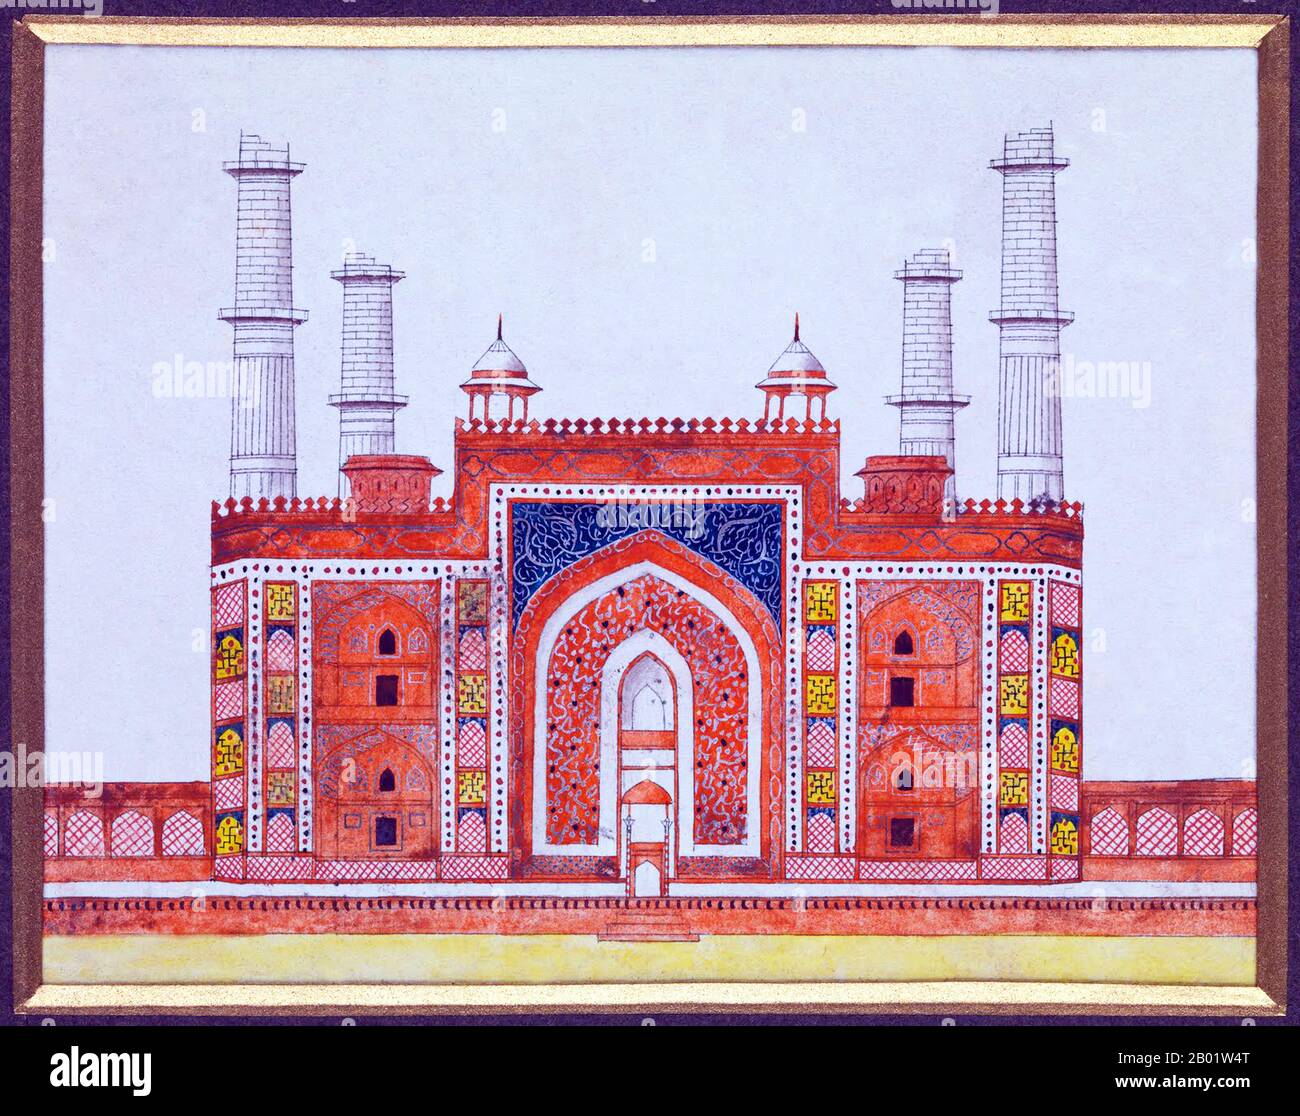 Inde : le mausolée du début du XVIIe siècle de l'empereur moghol Akbar. Aquarelle par la Compagnie des Indes orientales, c. 1820-1829. Le tombeau du troisième empereur moghol Akbar (R. 1556-1605) est un chef-d'œuvre architectural moghol important, construit en 1605-1613 et situé sur 119 acres de terrain à Sikandra, une banlieue d'Agra, Uttar Pradesh, Inde. L'empereur Akbar lui-même a commencé sa construction vers 1600, selon la tradition d'Asie centrale pour commencer la construction de sa tombe pendant sa vie. Akbar lui-même a planifié sa propre tombe et a choisi un site approprié. Il a été complété par son fils. Banque D'Images